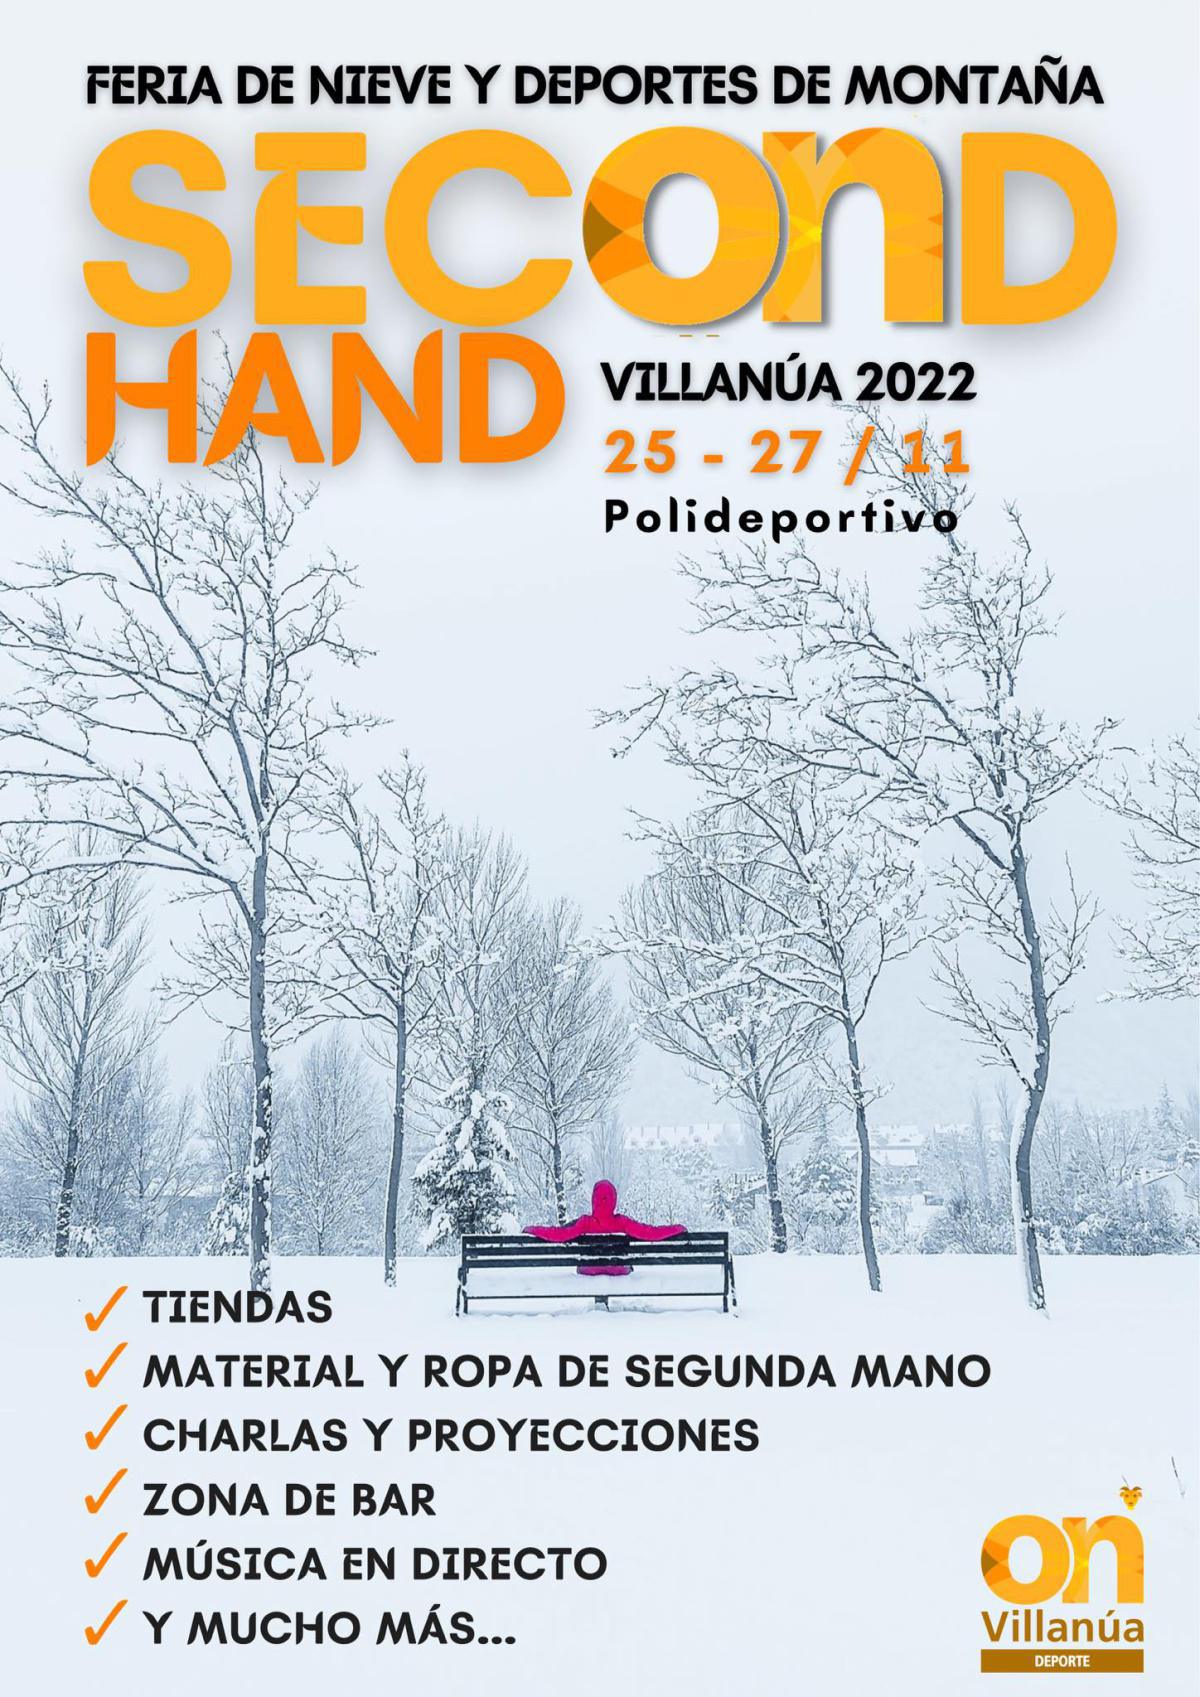 Feria de Nieve y deportes de montaña "Second Hand" en Villanúa (Huesca)